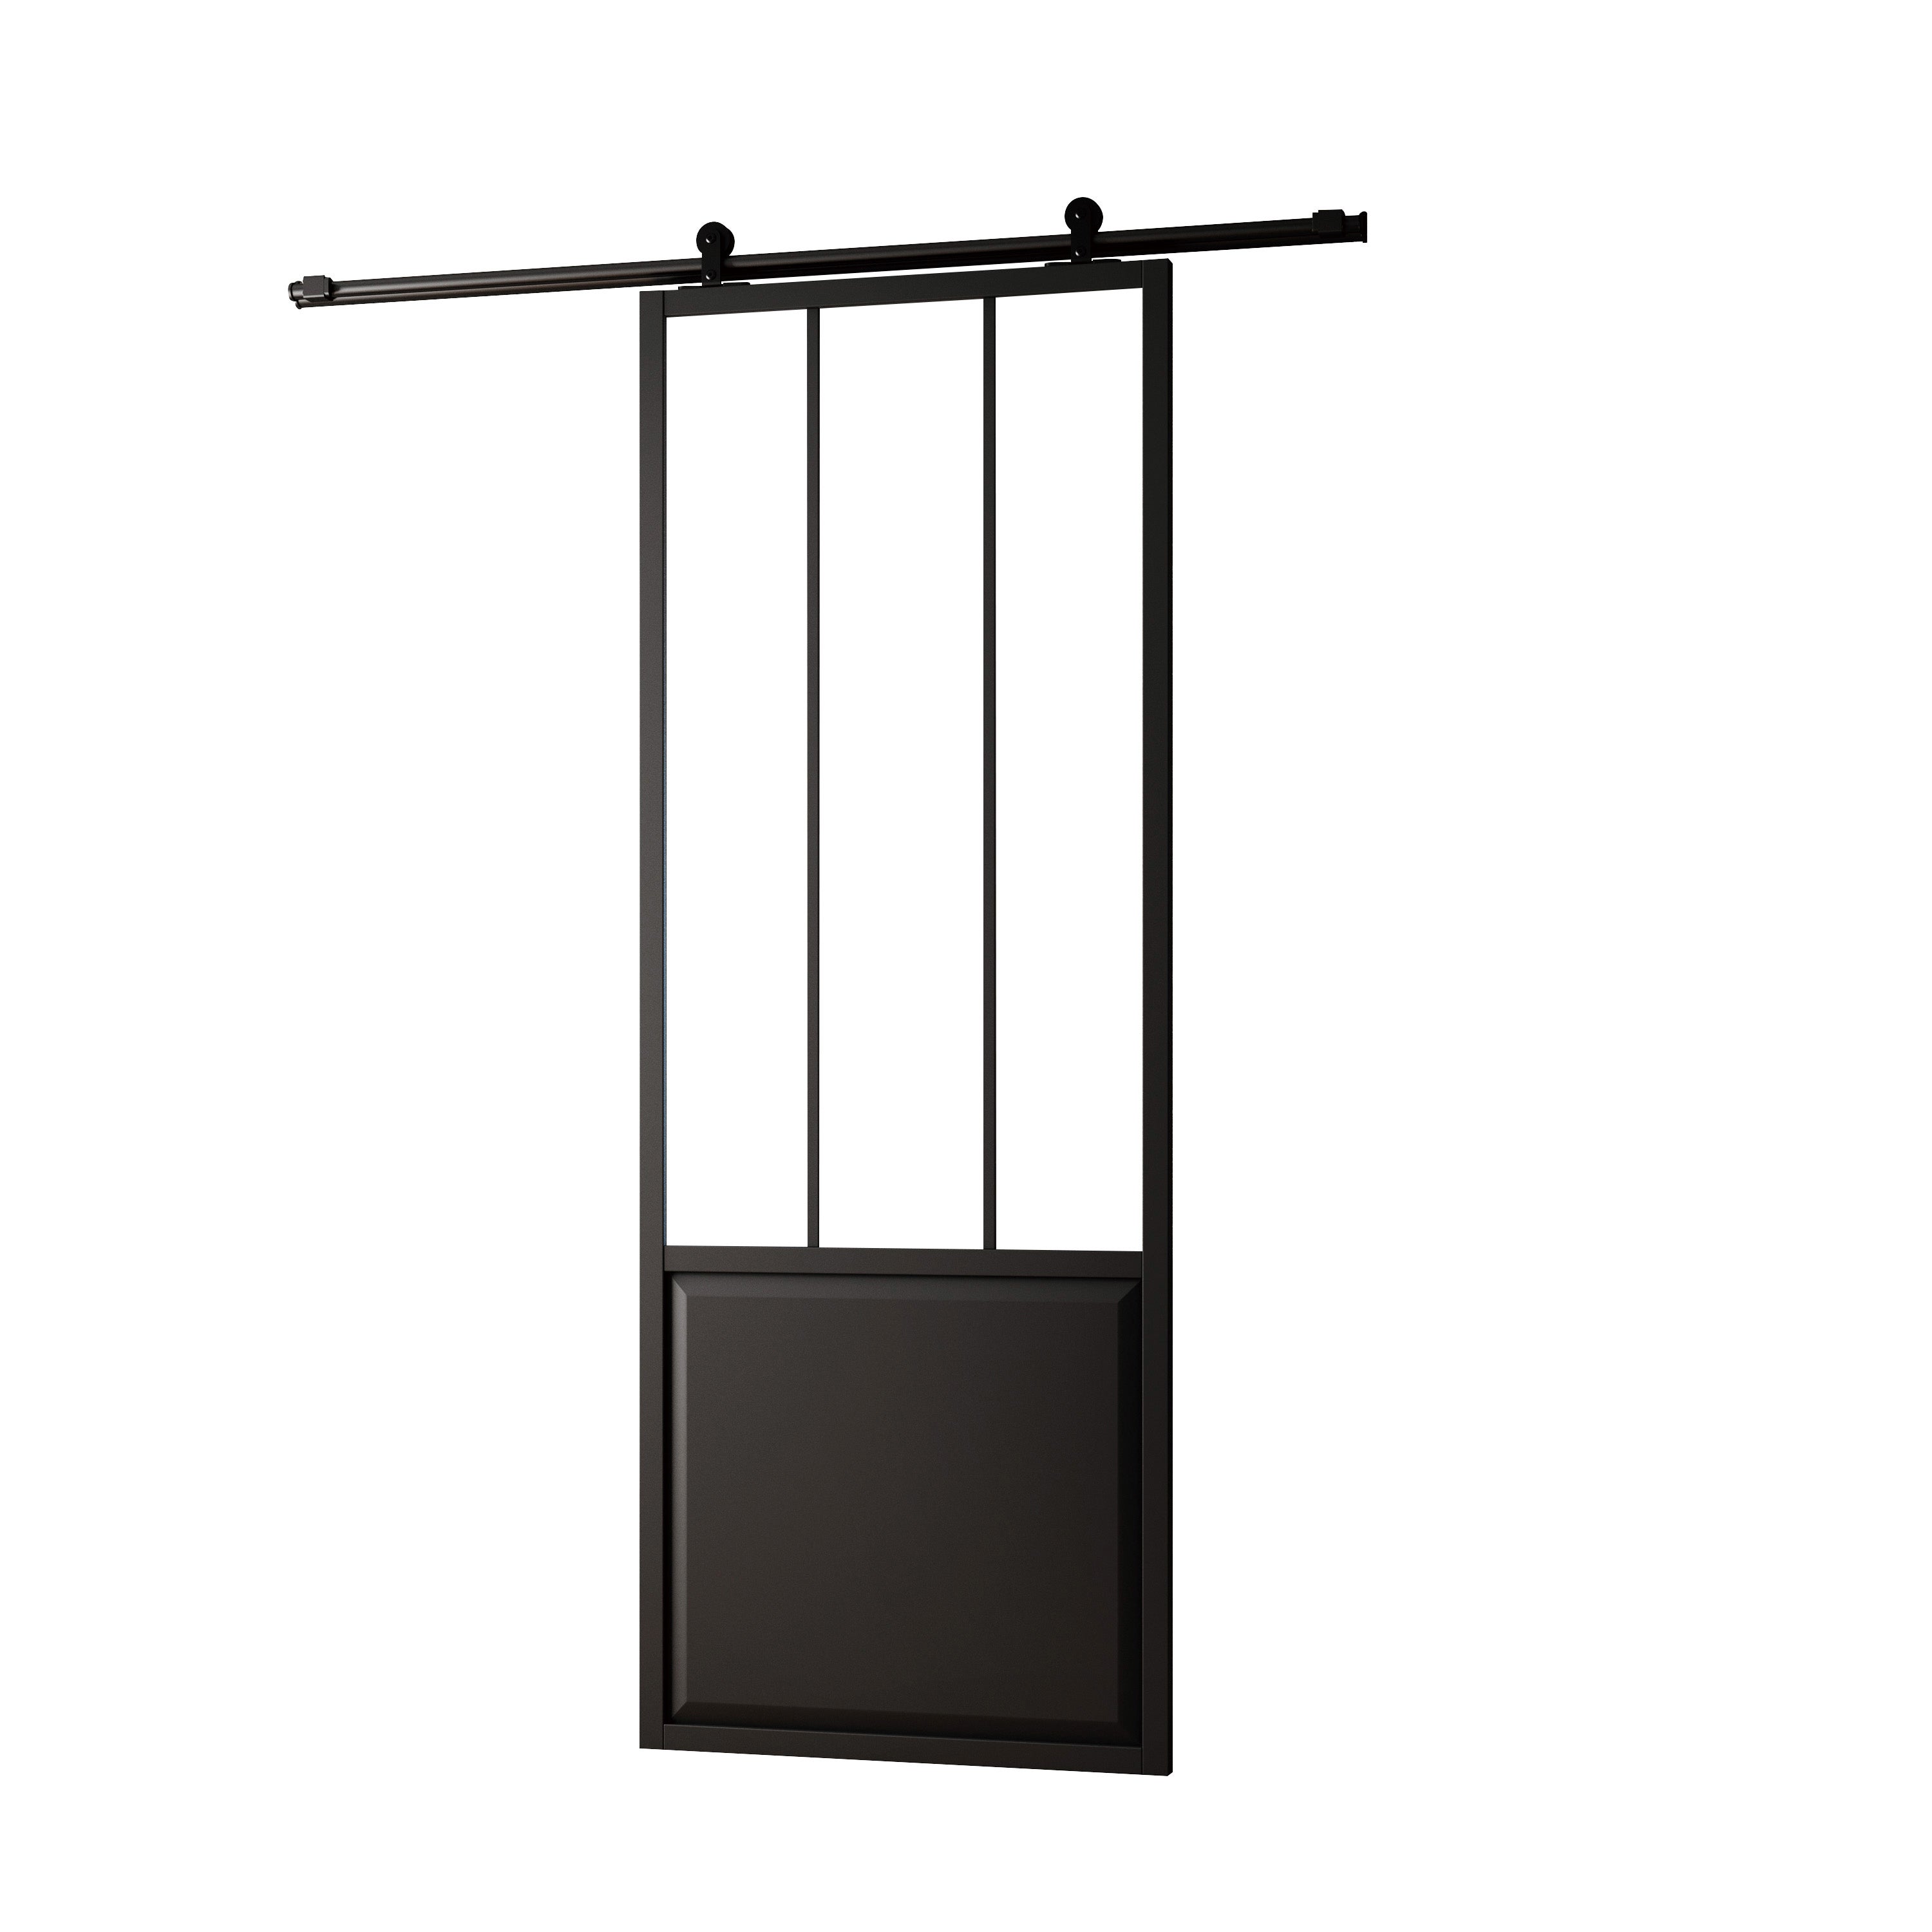 SIFISA - Porte coulissante alvéolaire type atelier - noir - sans mortaise -  204x93 cm